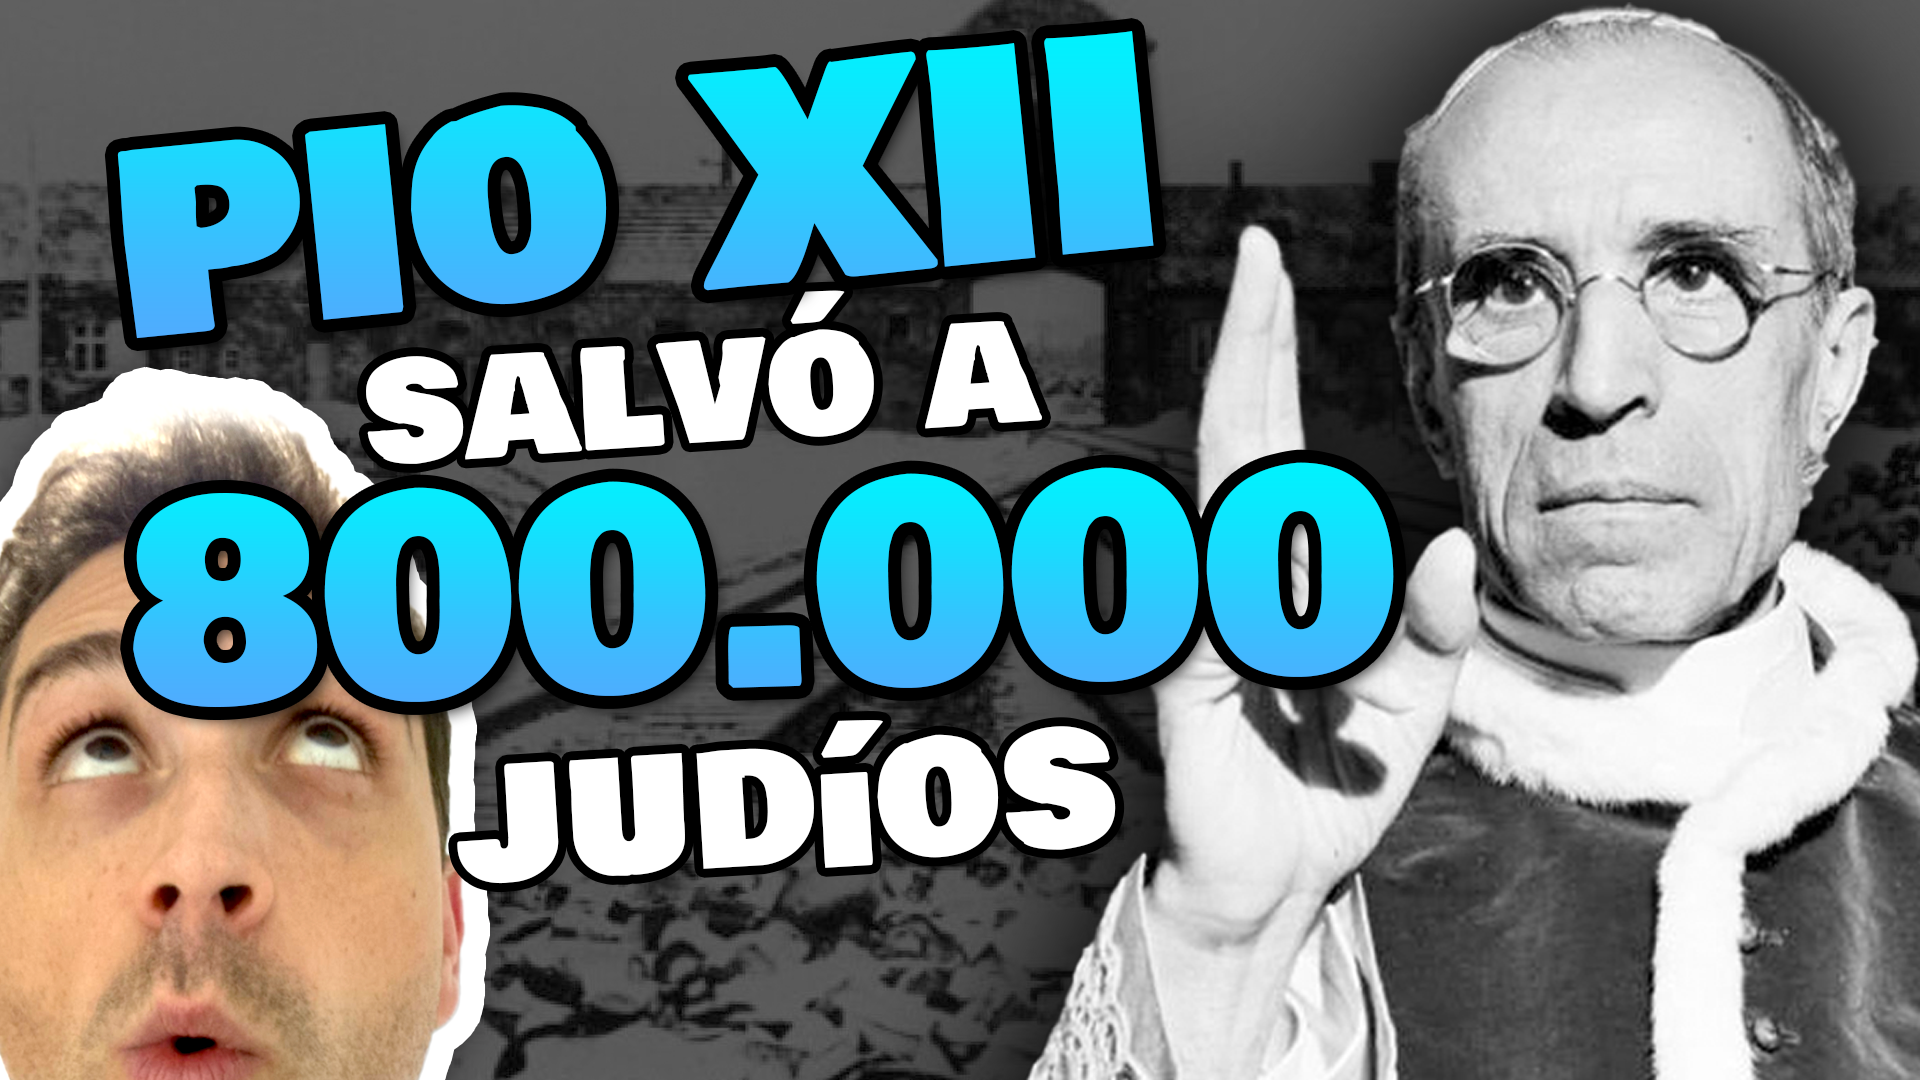 Papa Pío XII y el holocausto. Enriquísimo Tv canal católico de YouTube y Tik Tok. Enrique Vidal Flores